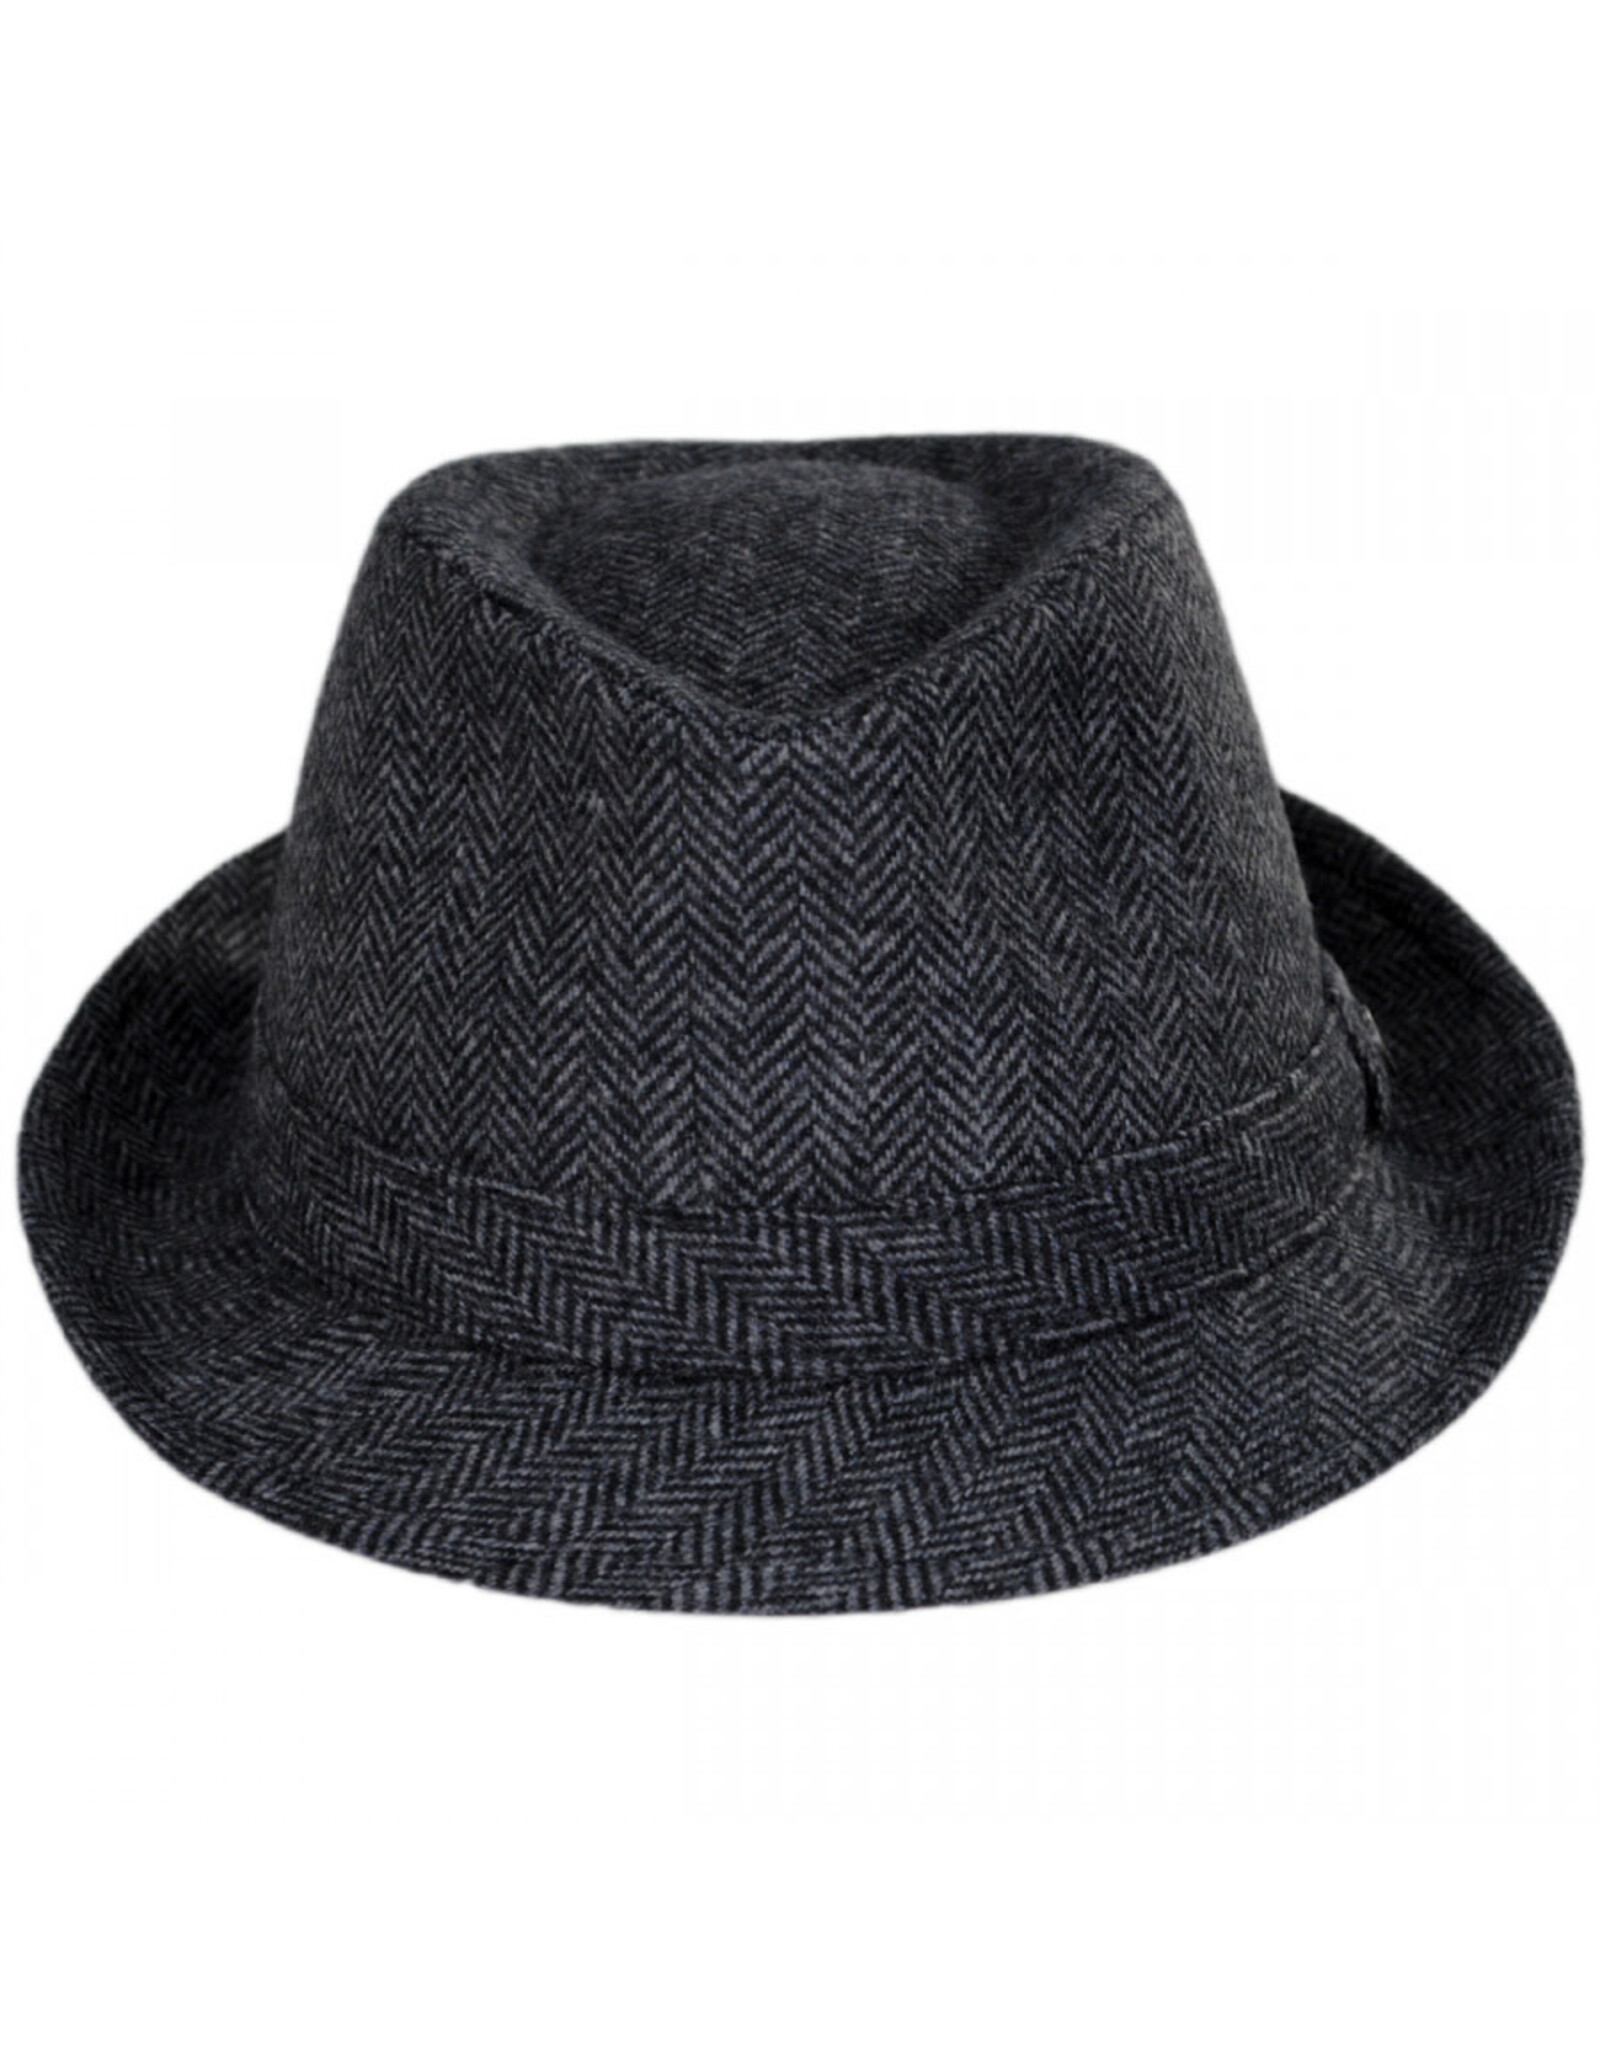 Jaxon Hats, Inc. XL Herringbone Wool Trilby Fedora Hat